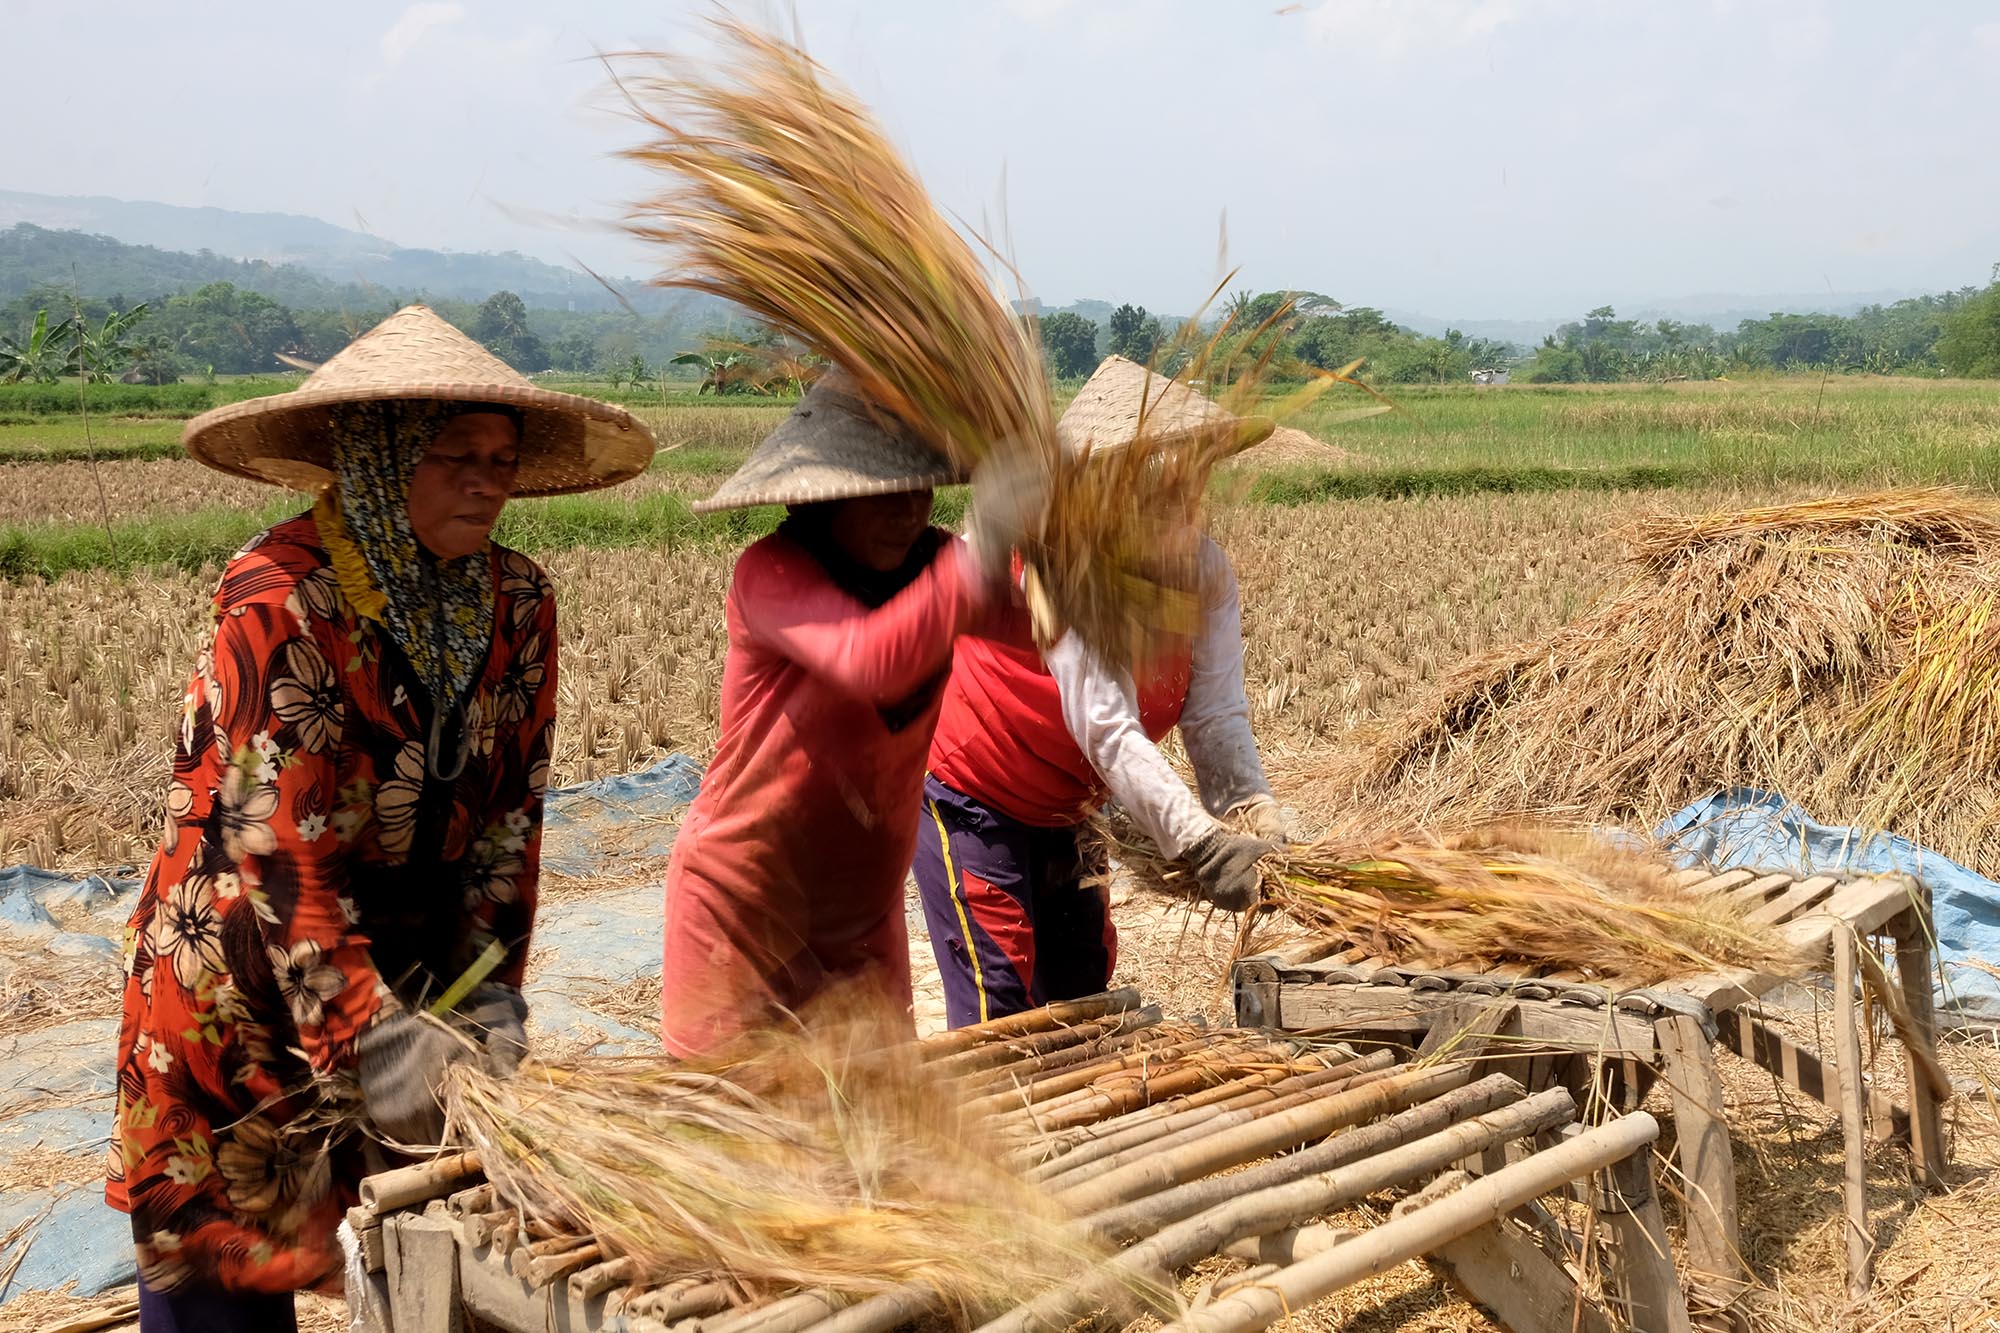 Petani memanen padi di sebuah area persawahan di kawasan Bogor,  Jawa Barat,  Senin, 23 Agustus 2021. Foto: Ismail Pohan/TrenAsia